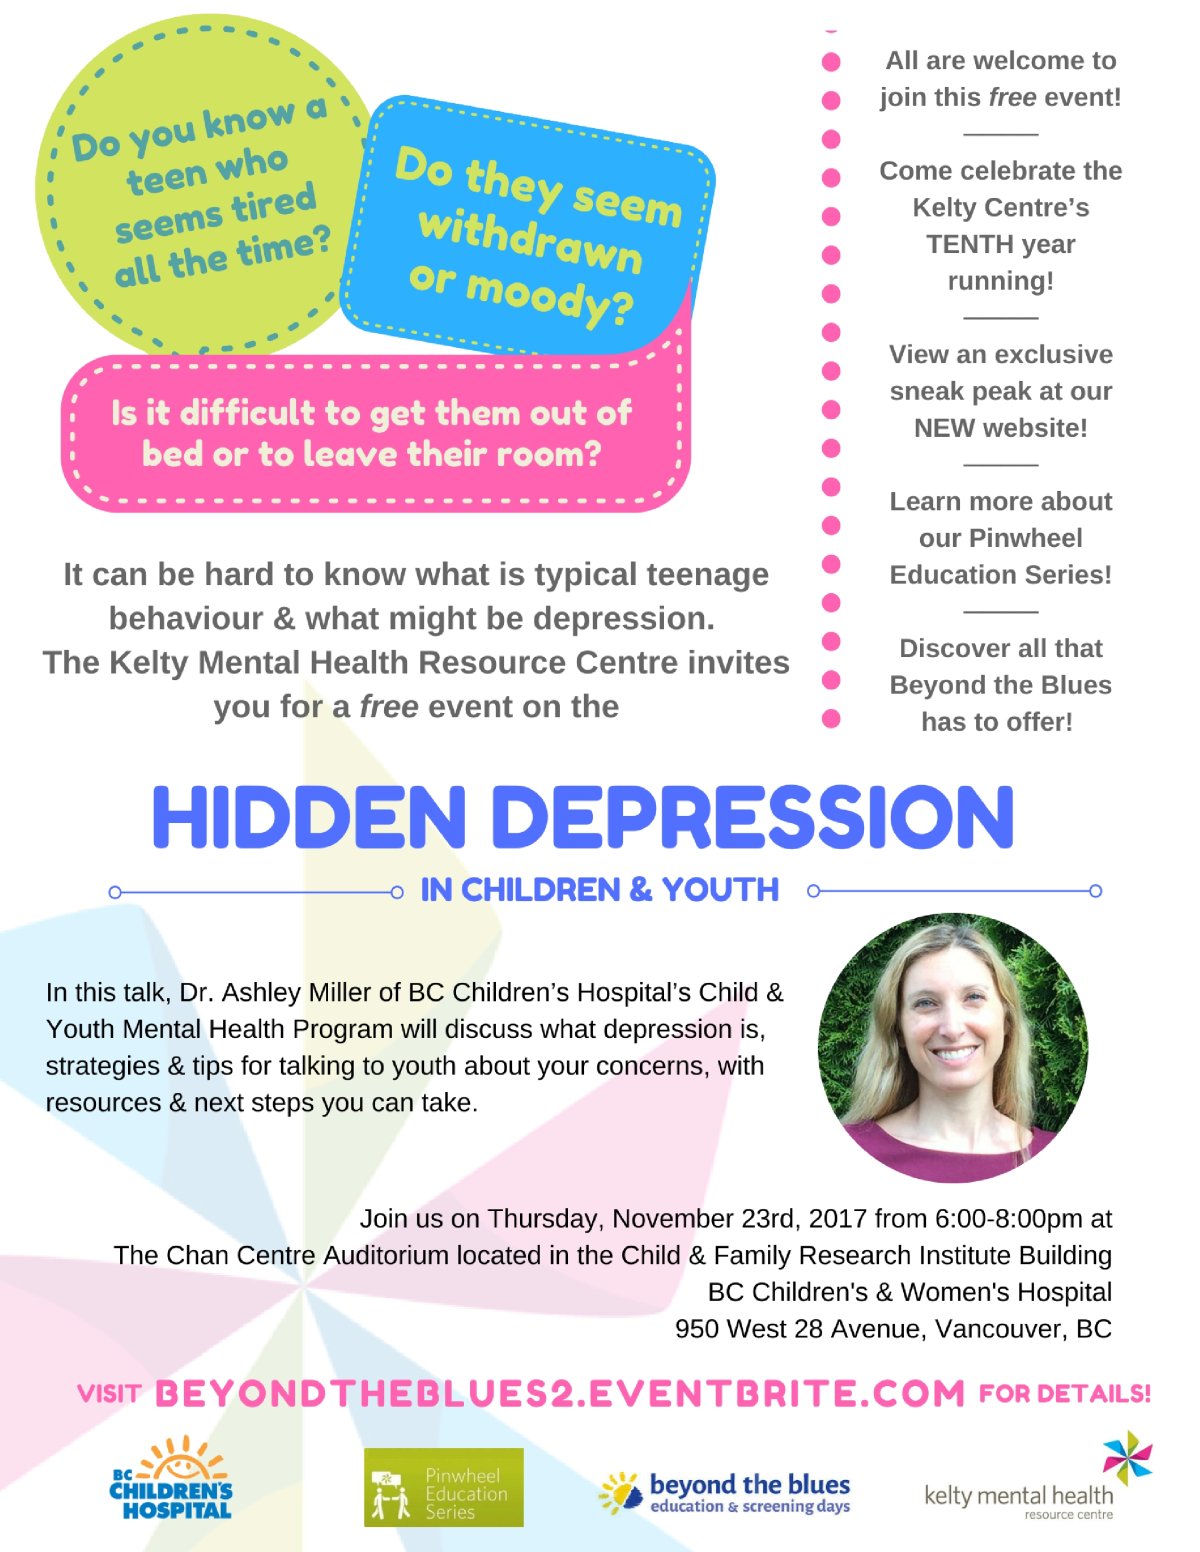 Hidden Depression in Children & Youth - image